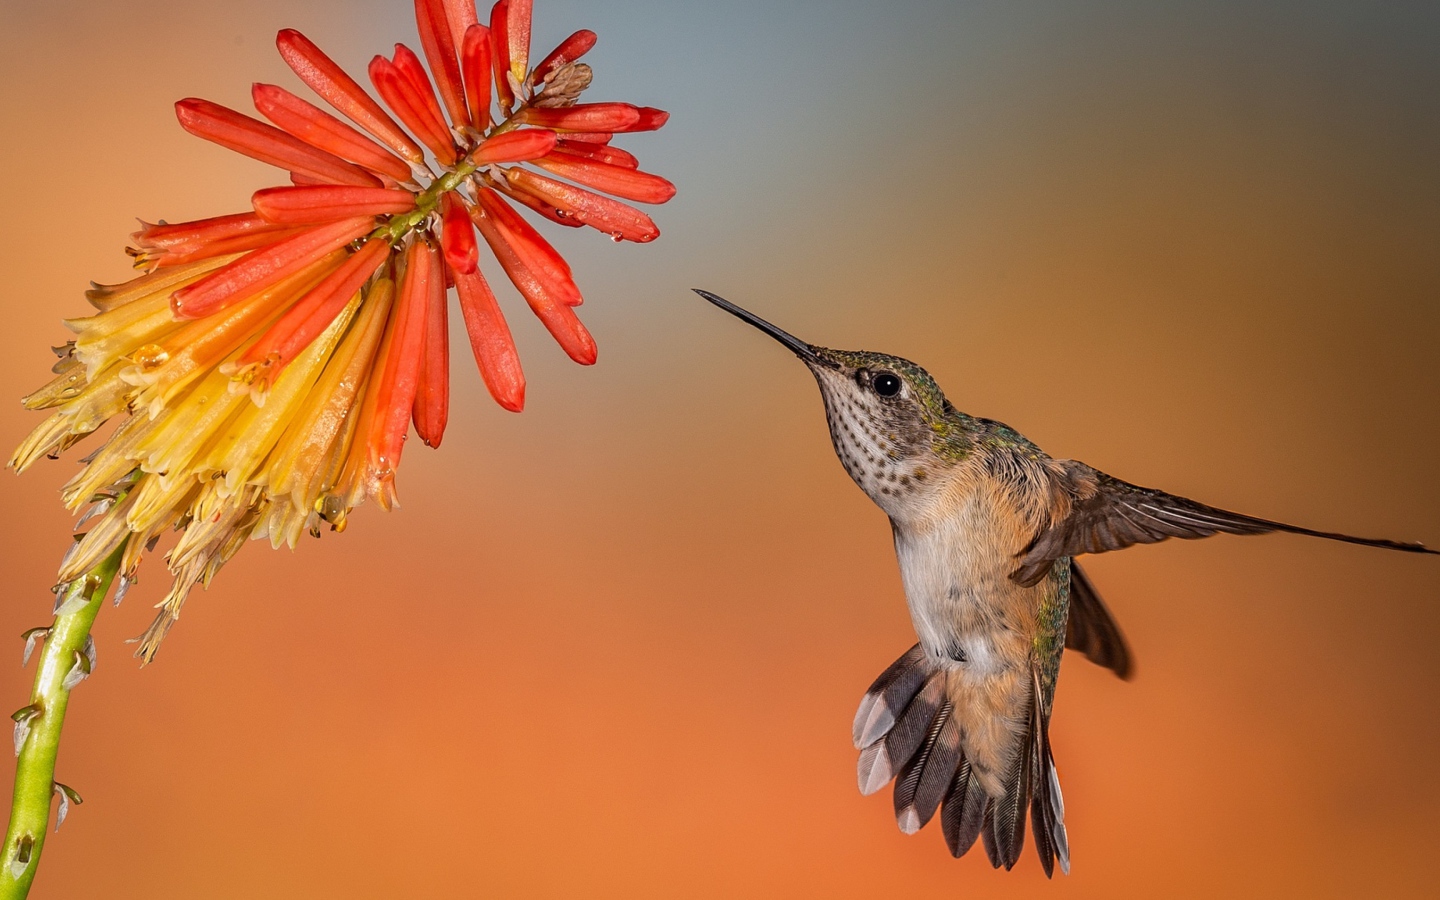 Hummingbird bird in flight at a red flower